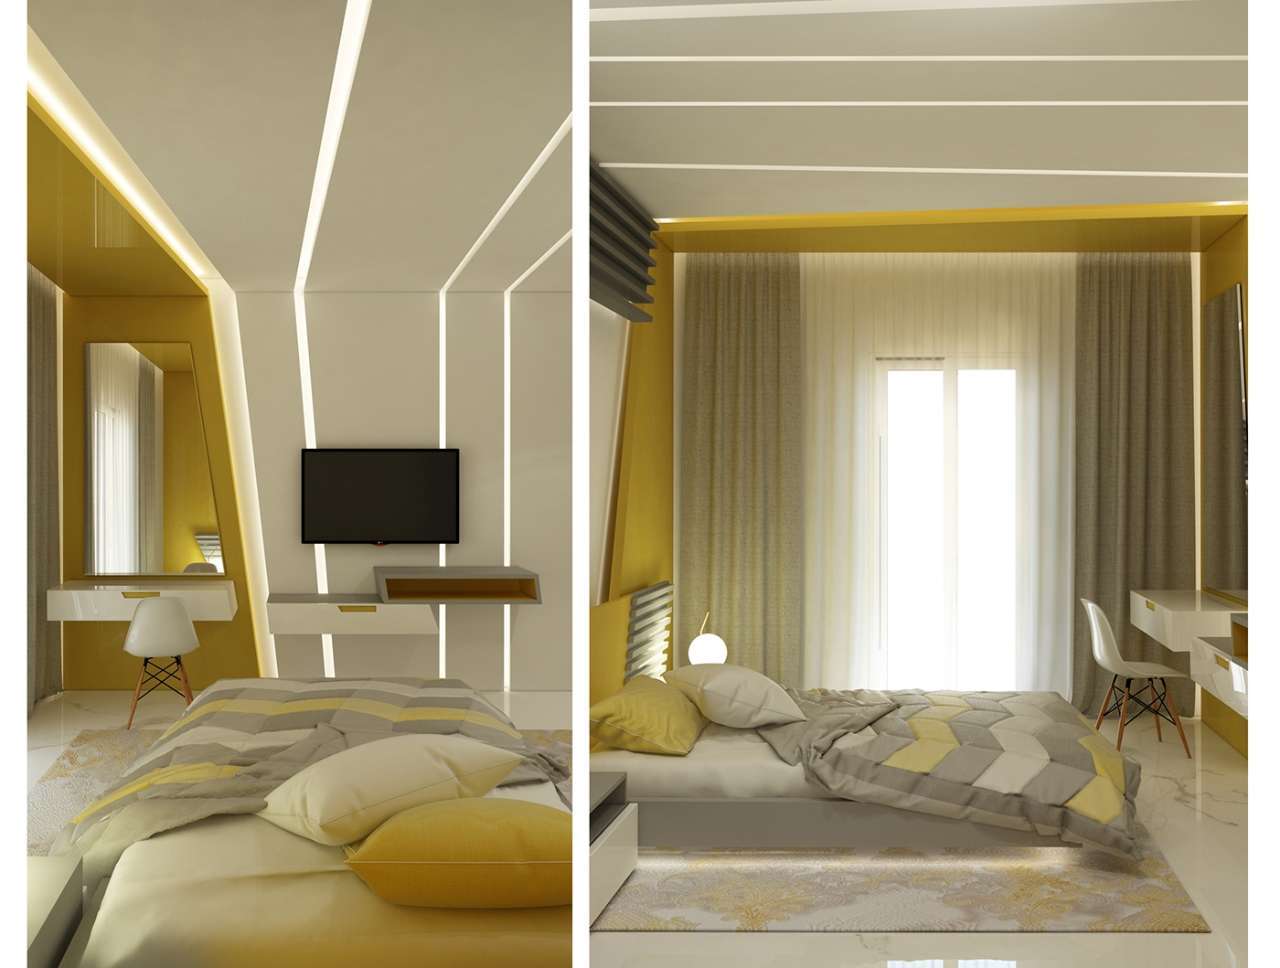 Sử dụng đèn led hoặc cửa sổ tối ưu ánh sáng phòng ngủ màu vàng